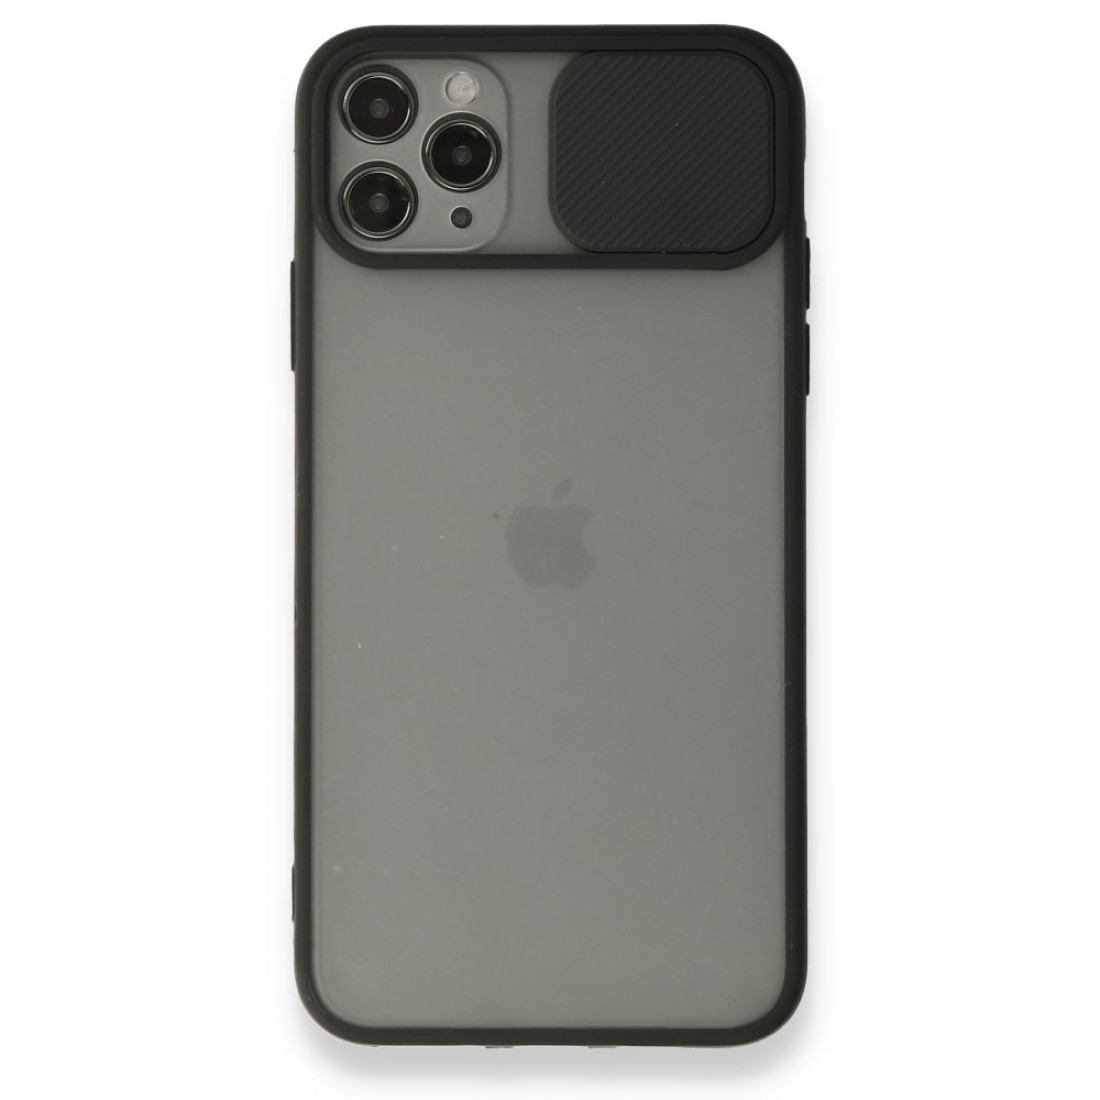 Apple iPhone 11 Pro Max Kılıf Palm Buzlu Kamera Sürgülü Silikon - Siyah